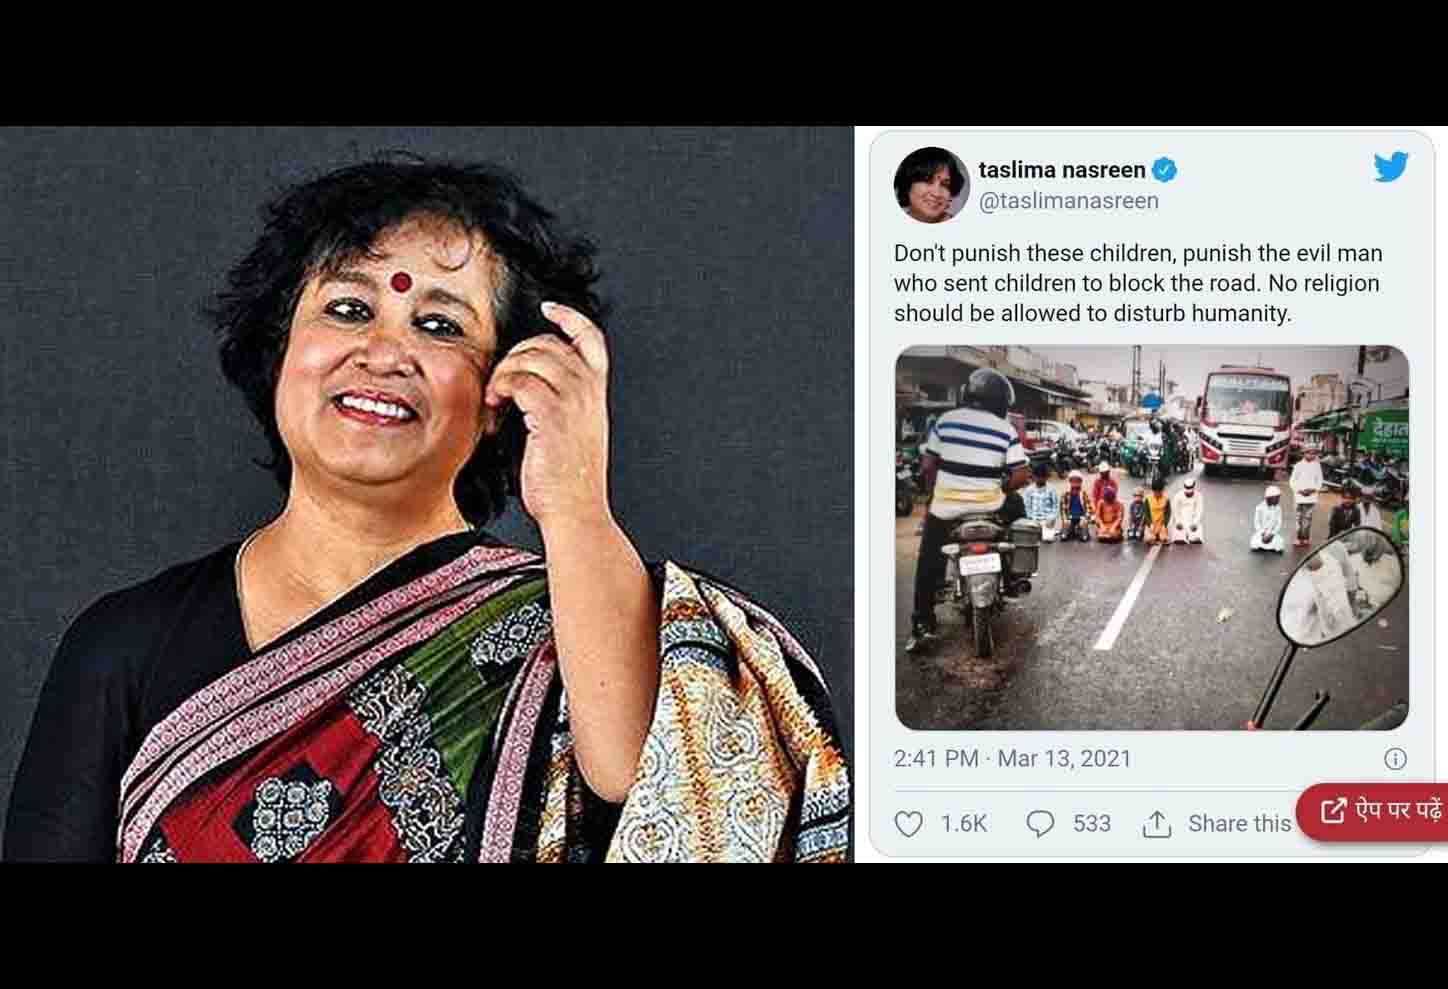 इस्लाम को बॉयकॉट करने वाली तसलीमा नसरीन ने हजारीबाग की तस्वीर किया ट्वीट,कहा बच्चों को रोड में भेज कर सड़क जाम करवाने वाले शैतानों को सजा मिलना चाहिए